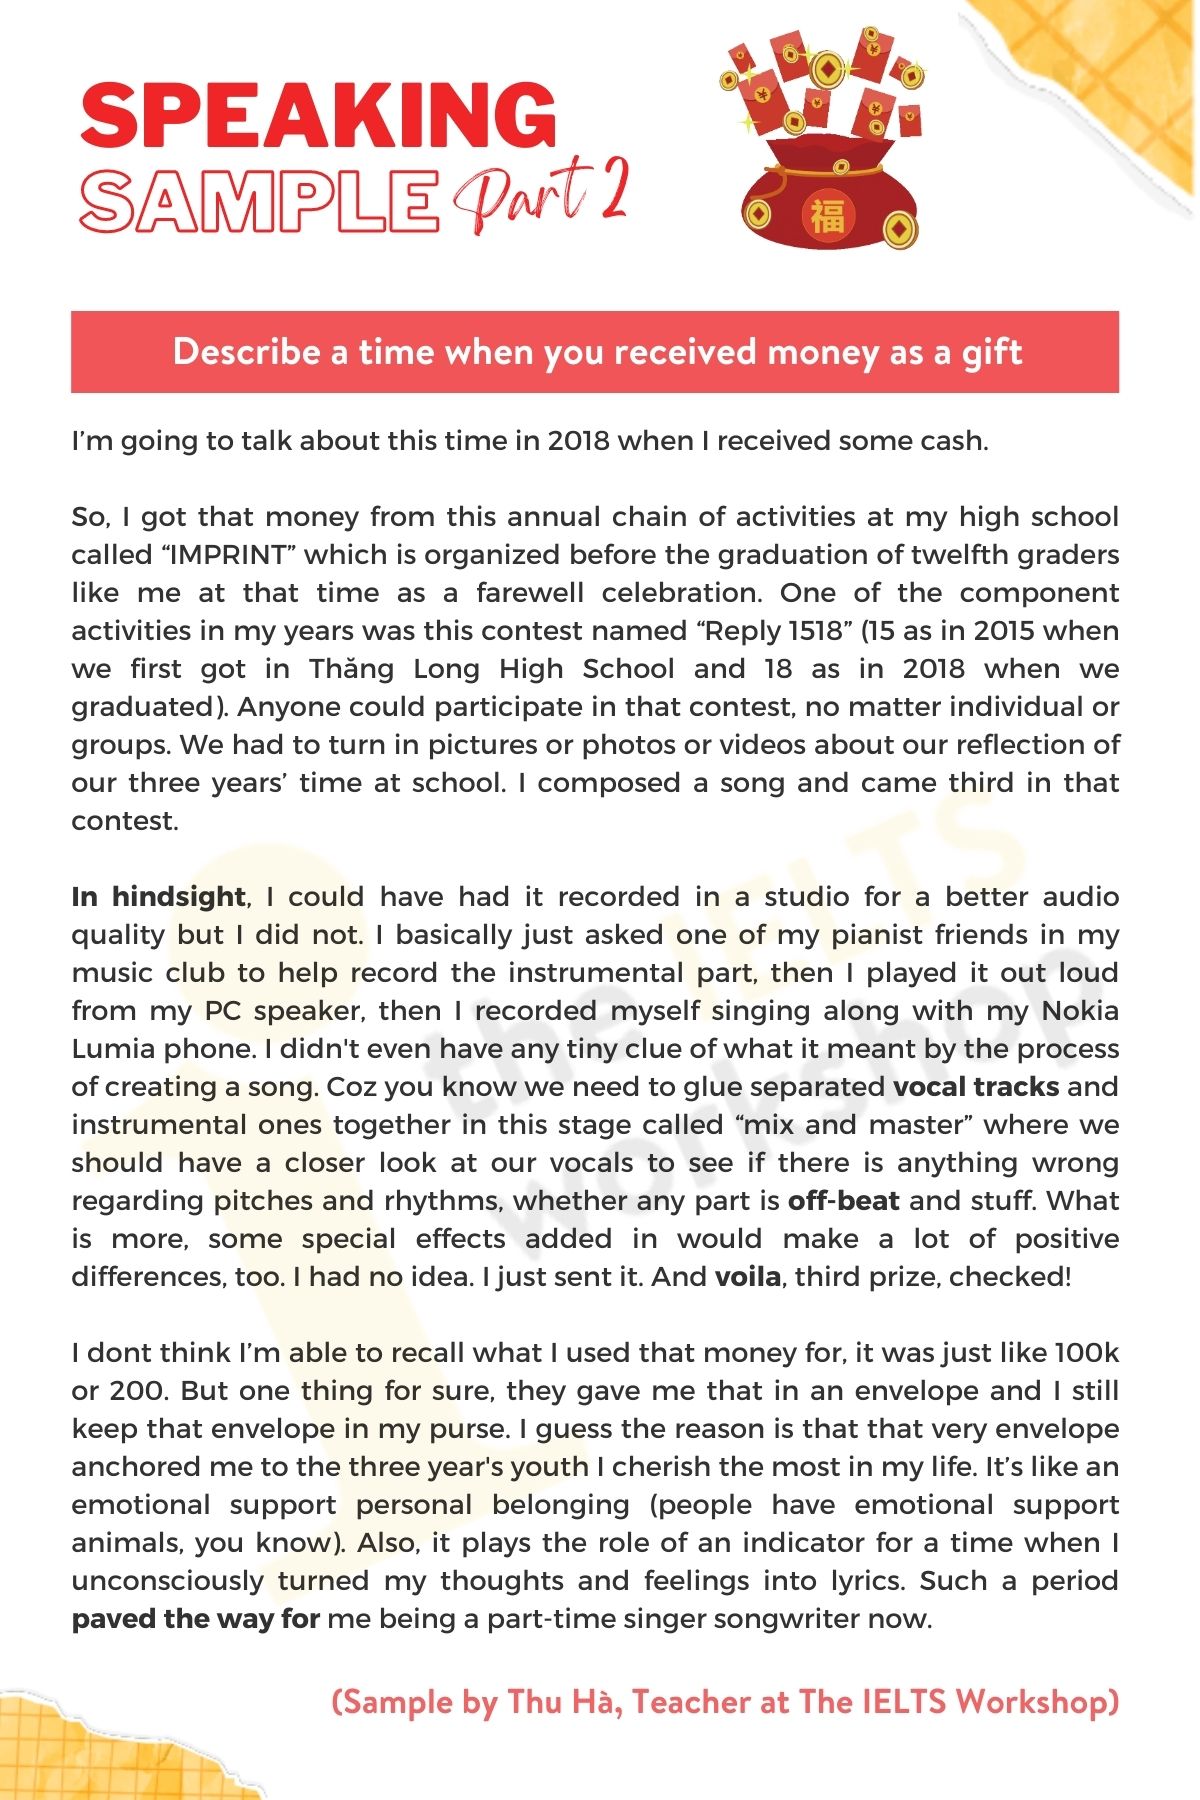 Describe-a-time-when-you-received-money-as-a-gift